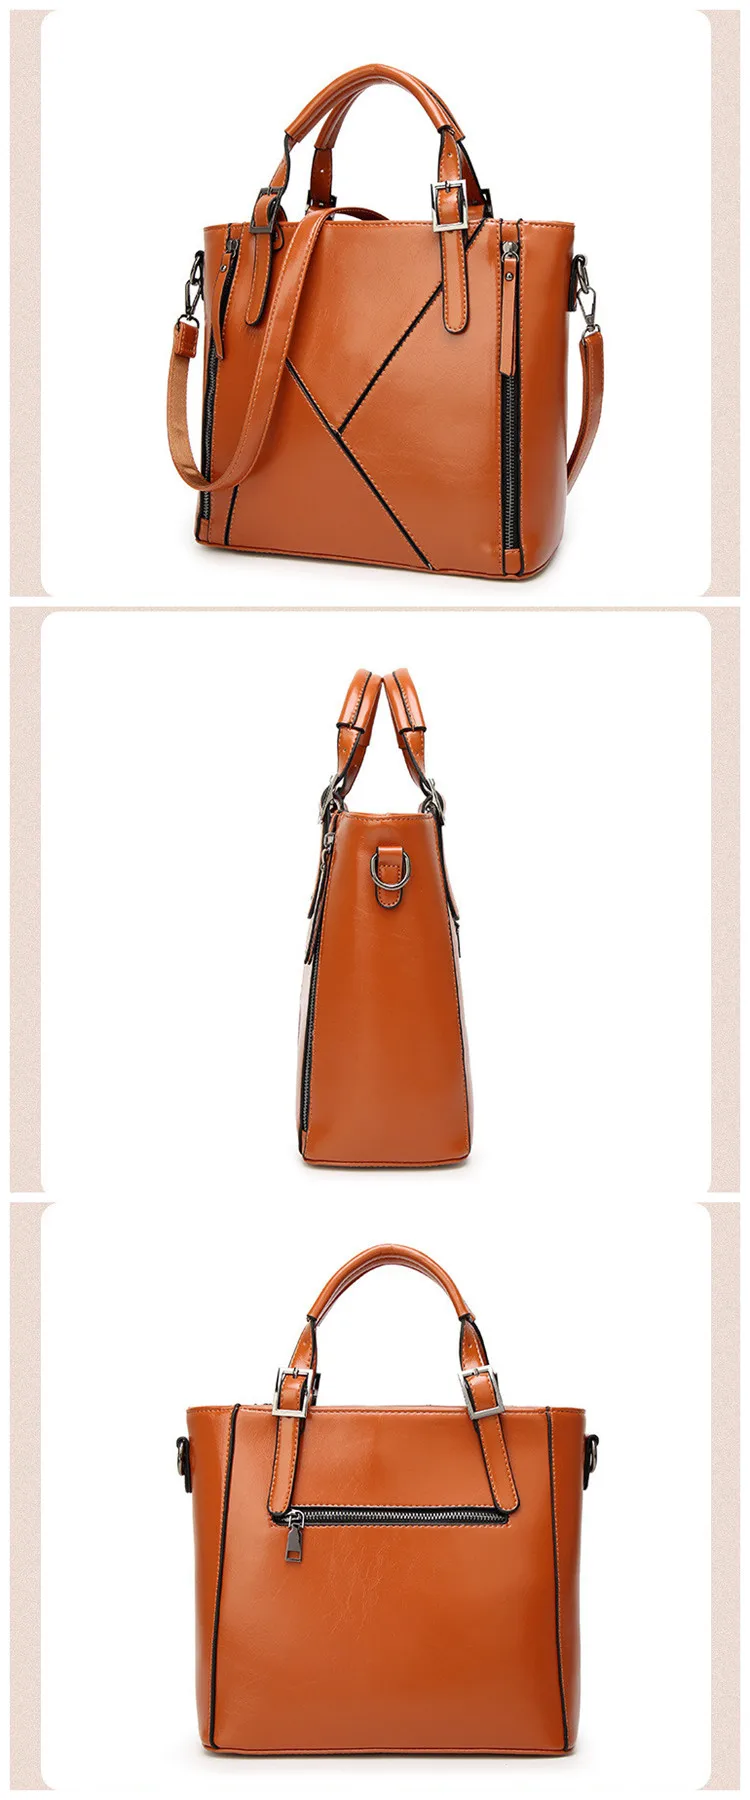 China Bag Manufacturer New Style Fashion Jingpin Brand Bags Woman Luxury Handbags For Women Pu ...